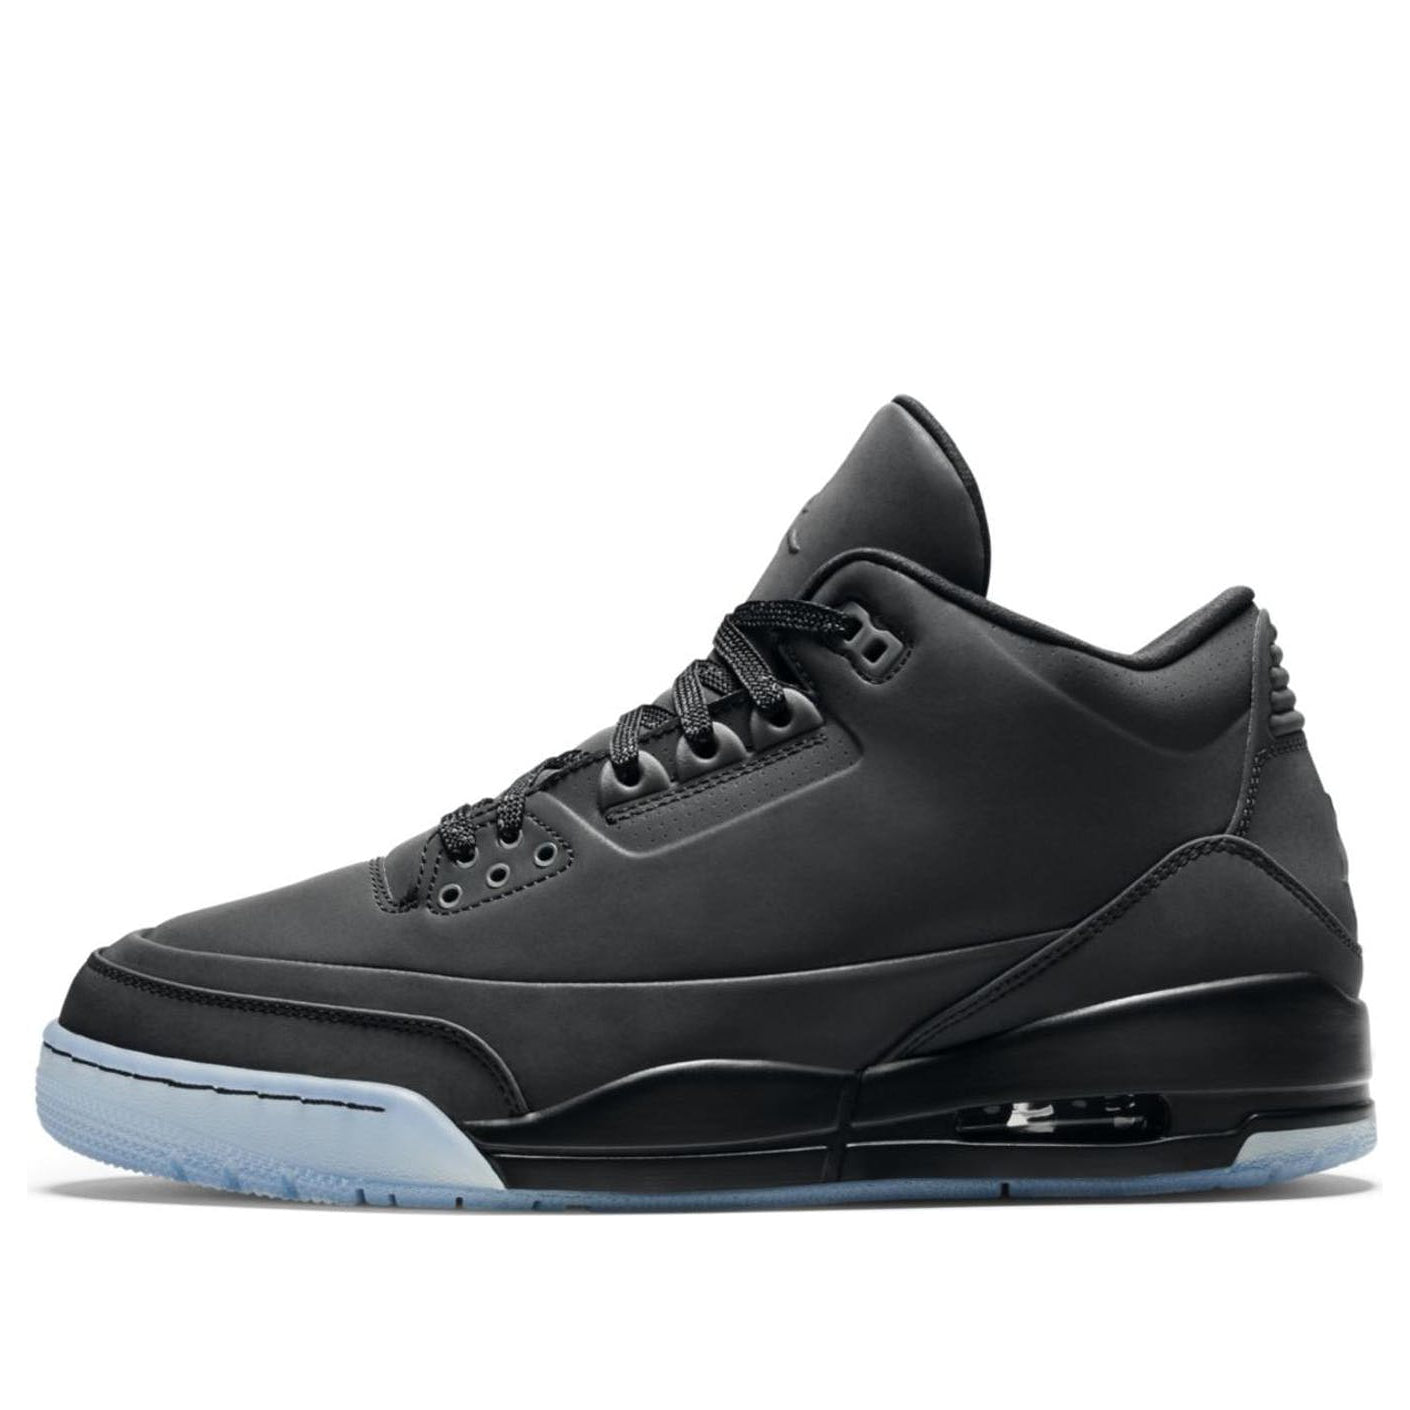 Air Jordan 3 5Lab3 'Reflective Black'  631603-010 Classic Sneakers